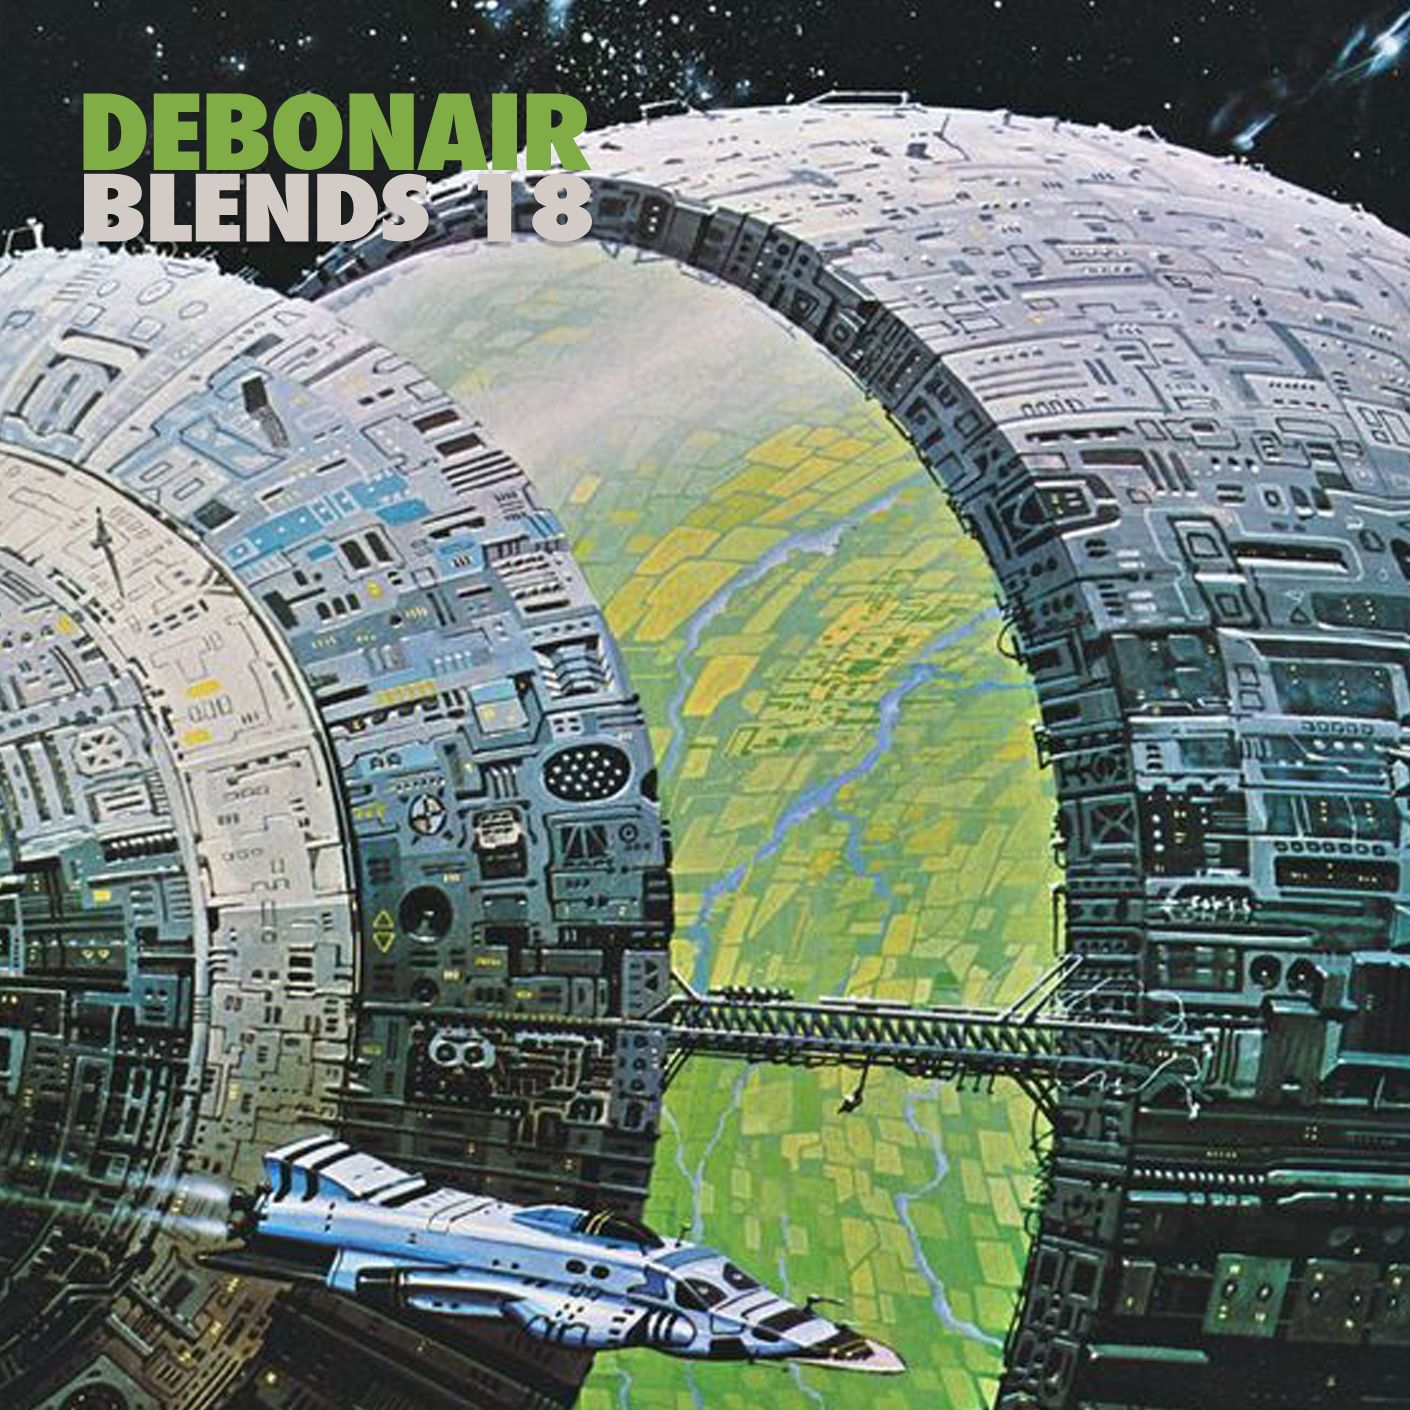 Download Debonair Blends 18 ('95-'97 Hip Hip Megamix)